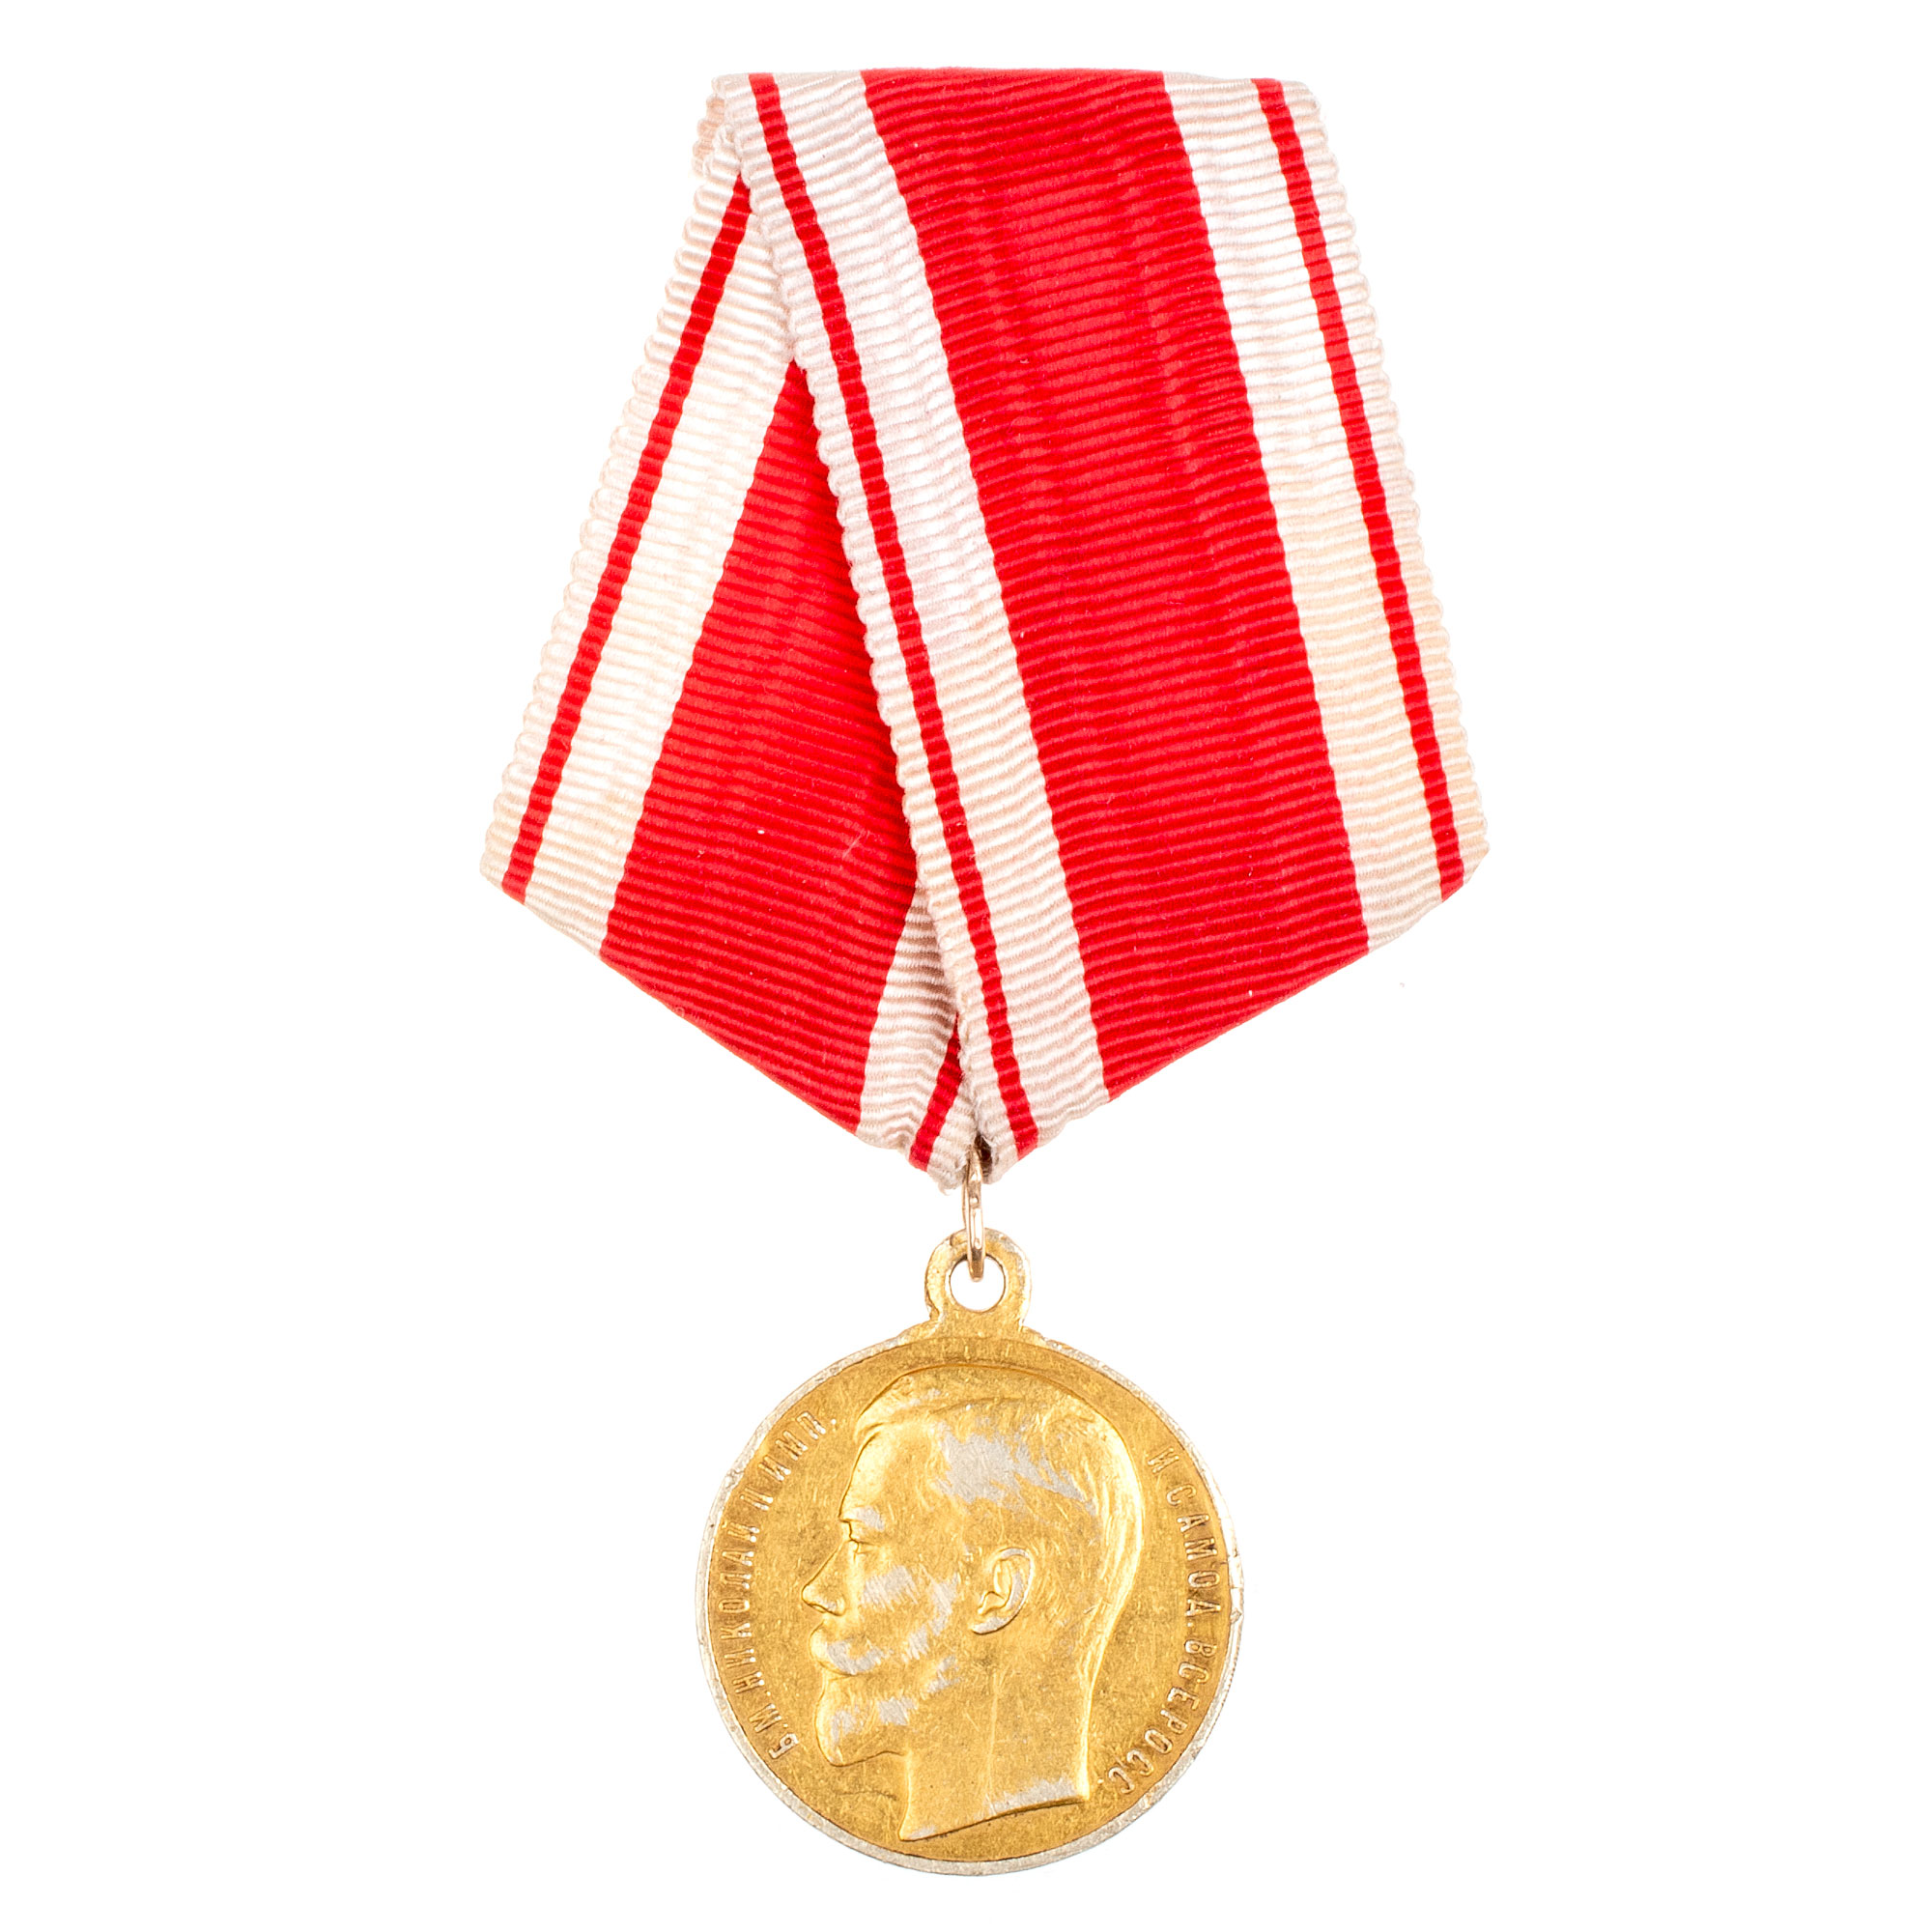 Медаль "За Усердие" с портретом Императора Николая II (образца 1915 г) на ленте. Золото 56".